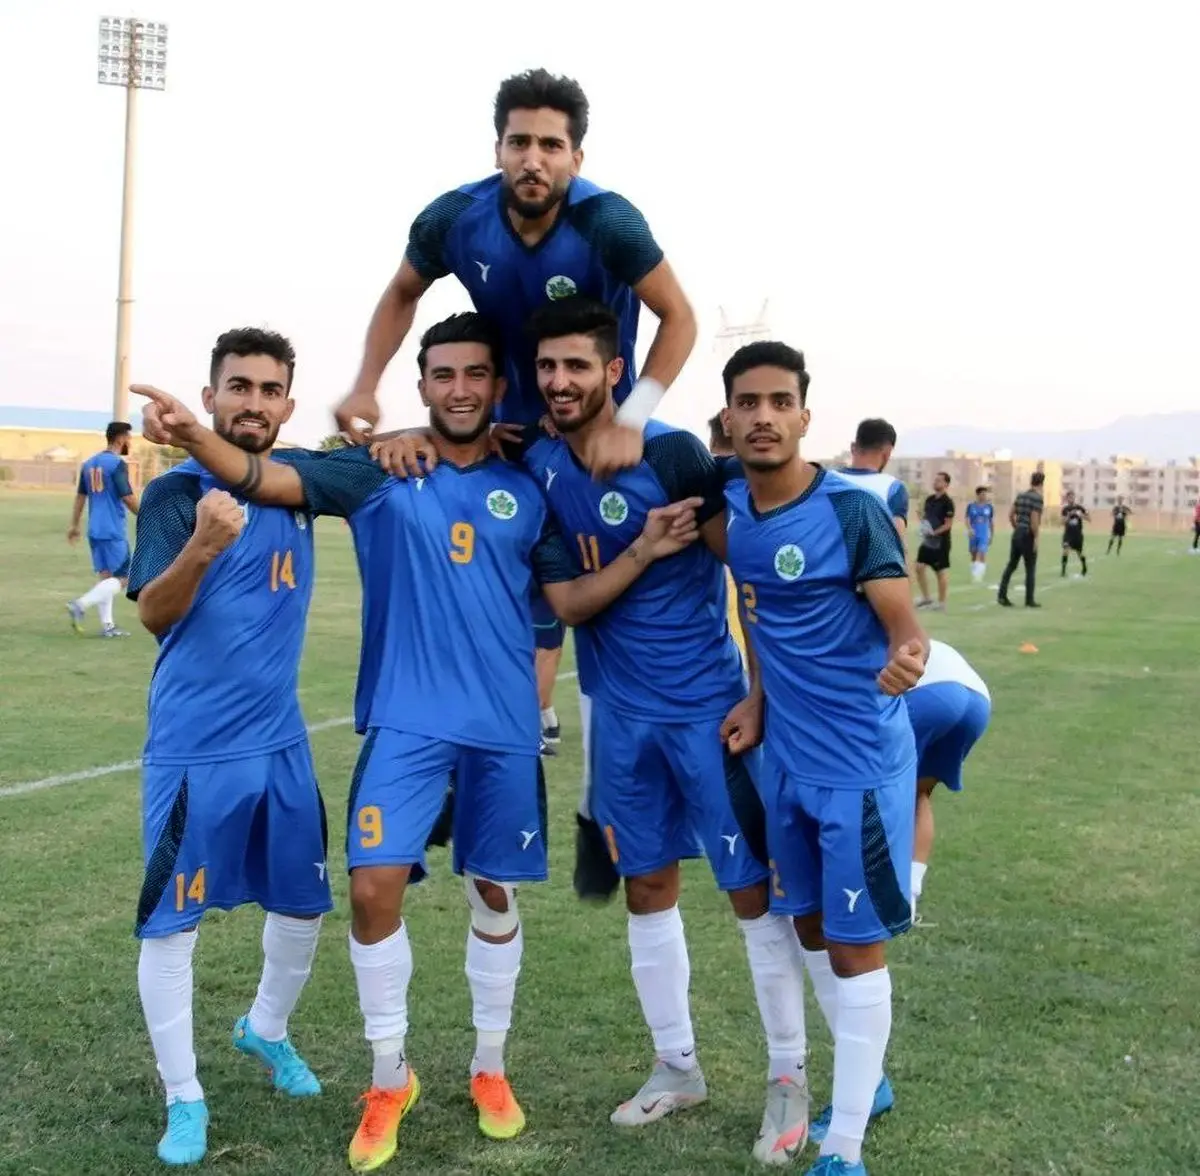 بازی بزرگ هفته در اسلامشهر /میزبانی آریو از نفت و گاز متحول شده